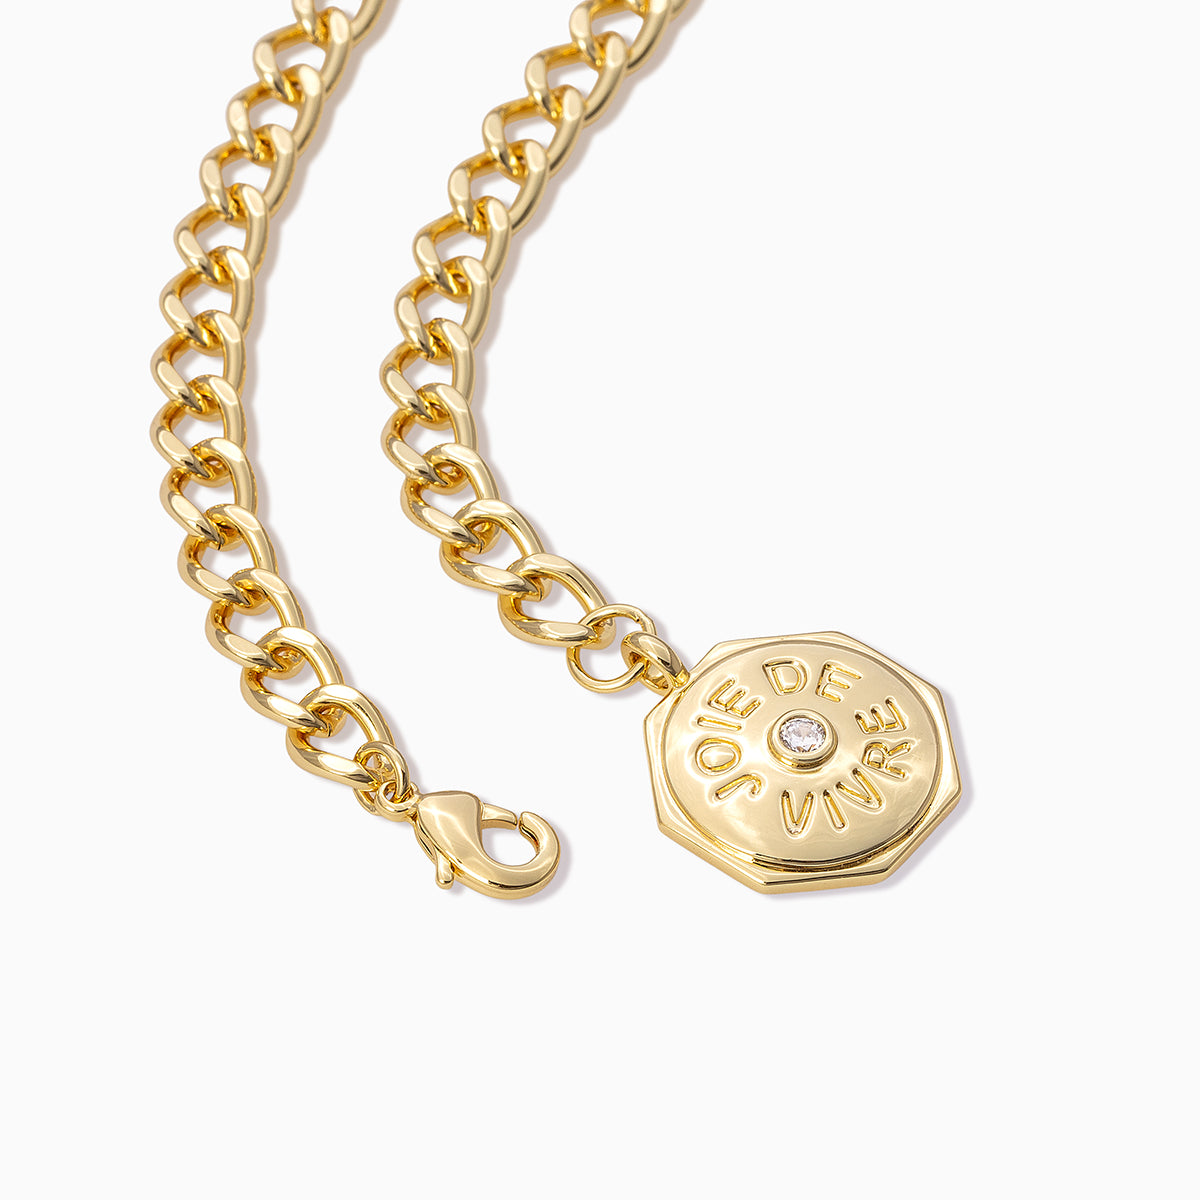 Joie De Vivre Bracelet | Gold | Product Detail Image | Uncommon James